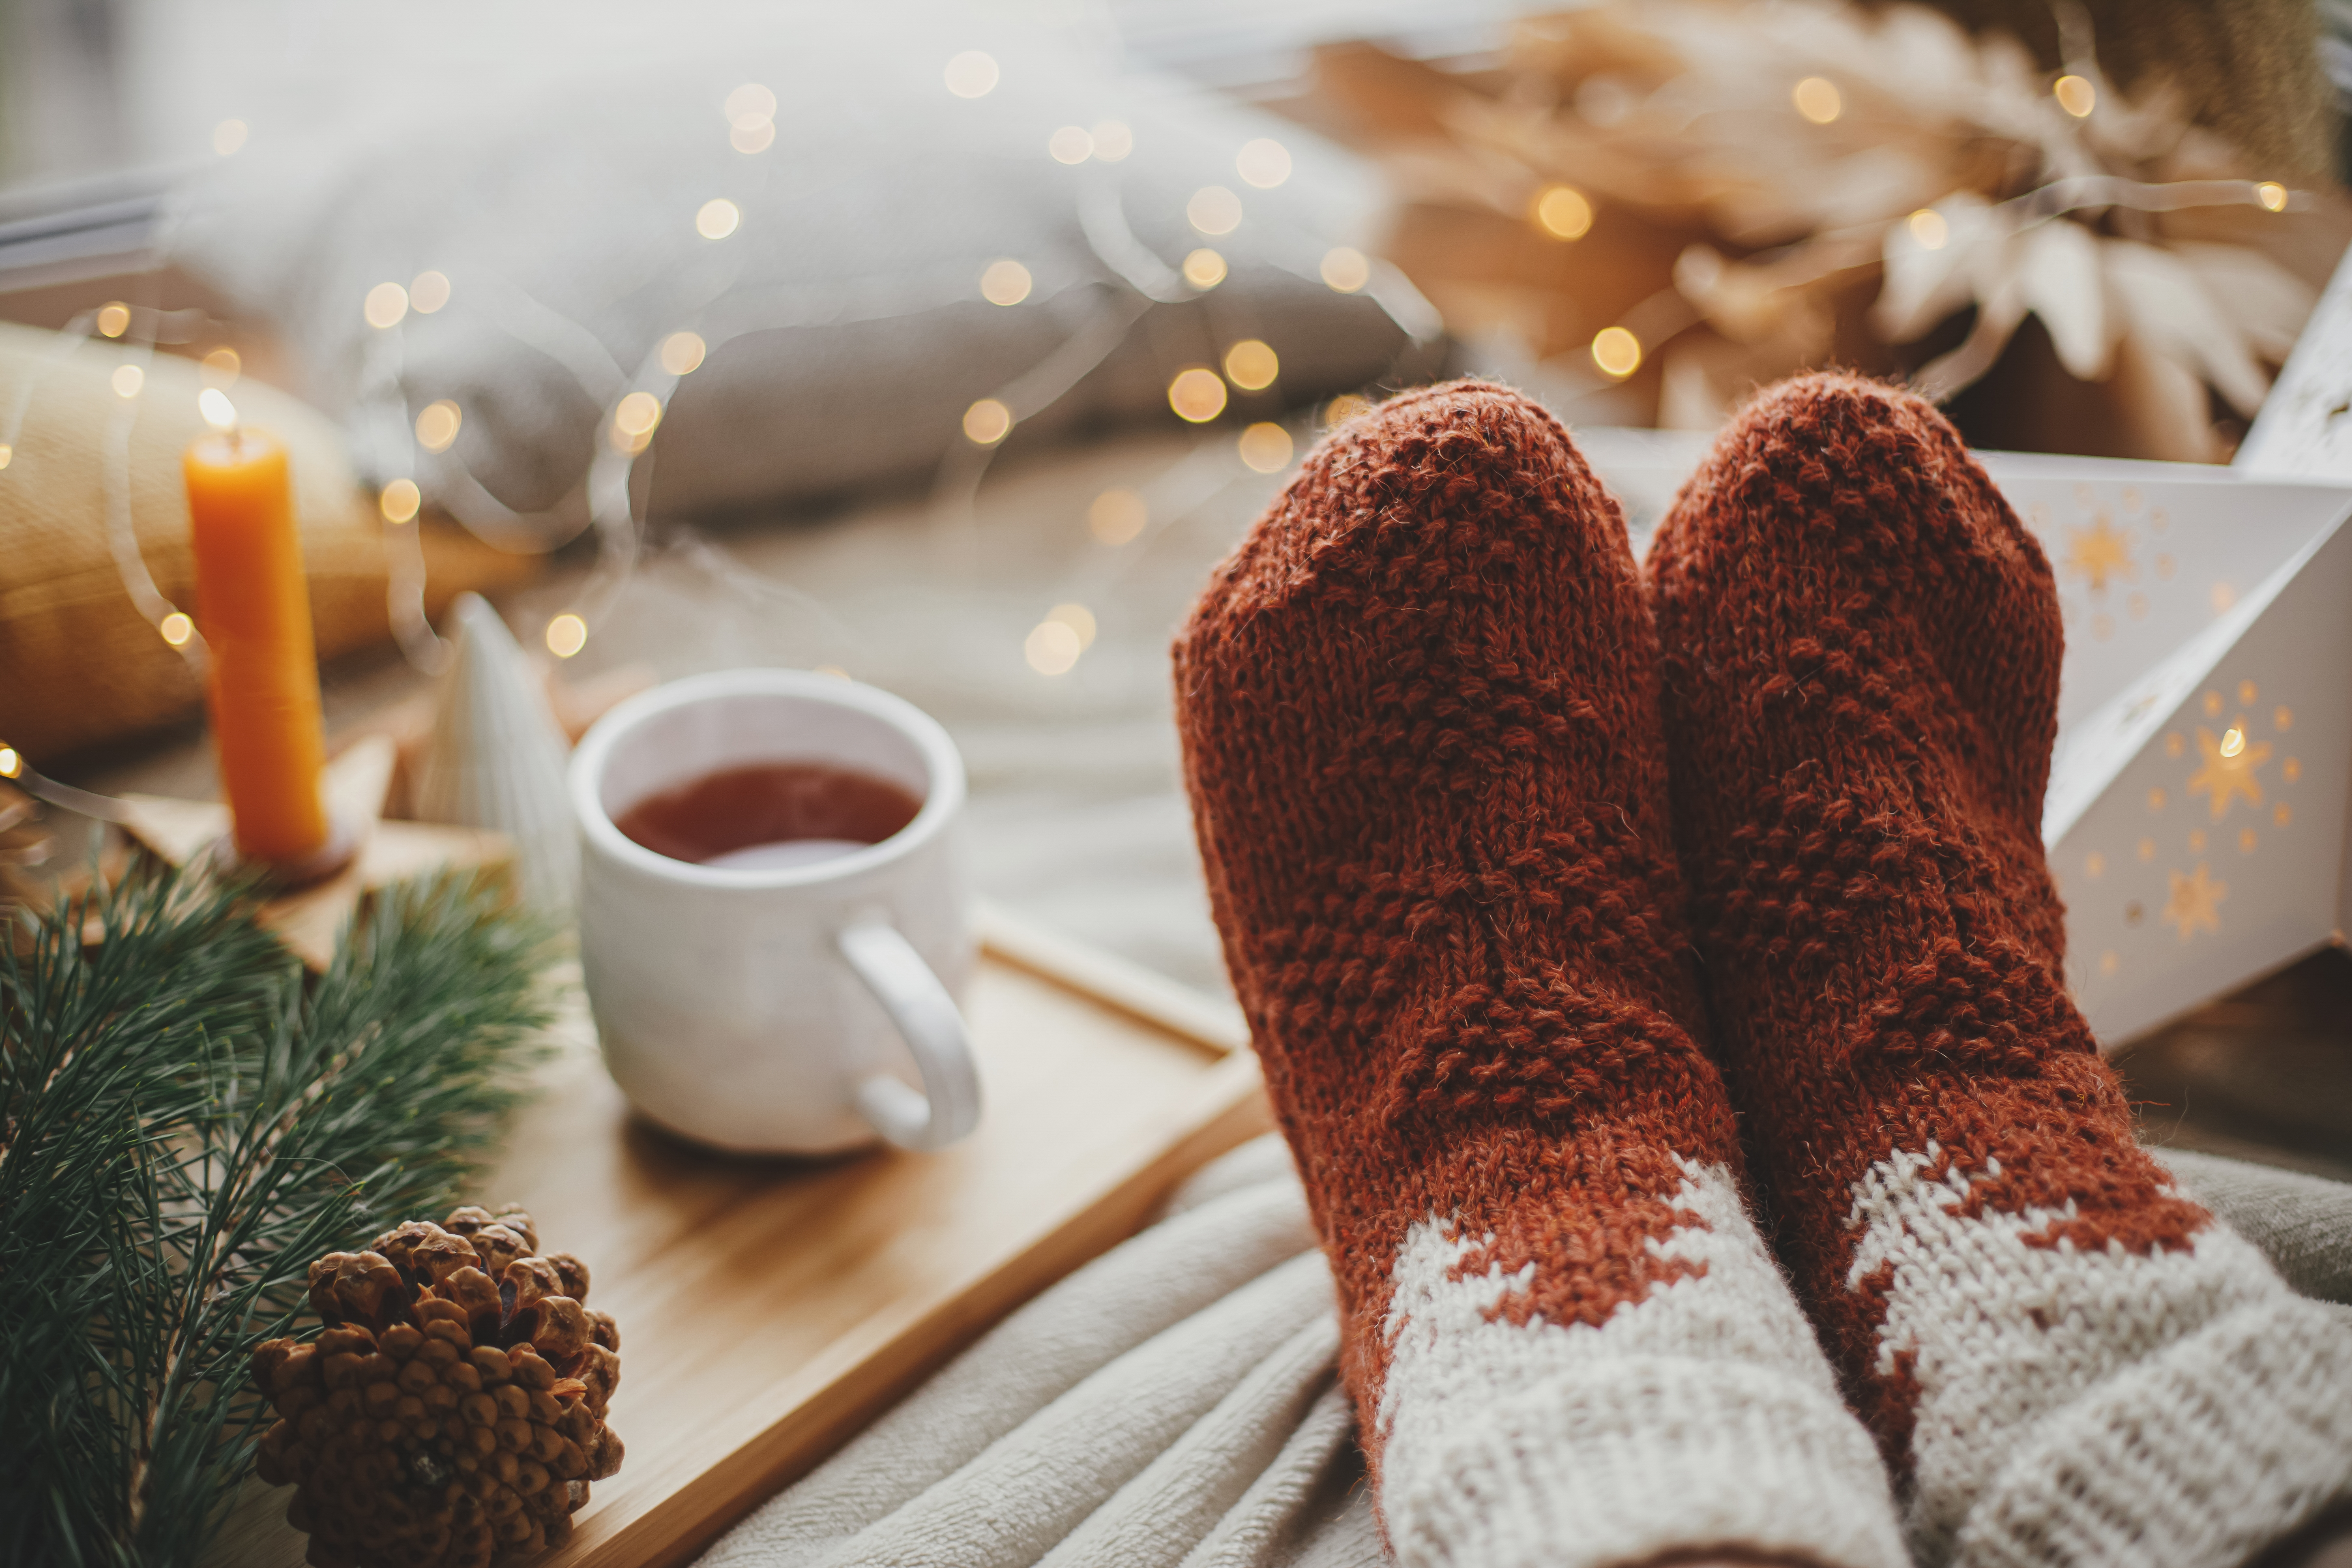 Eine Person in kuscheligen Socken mit Tee | Quelle: Shutterstock